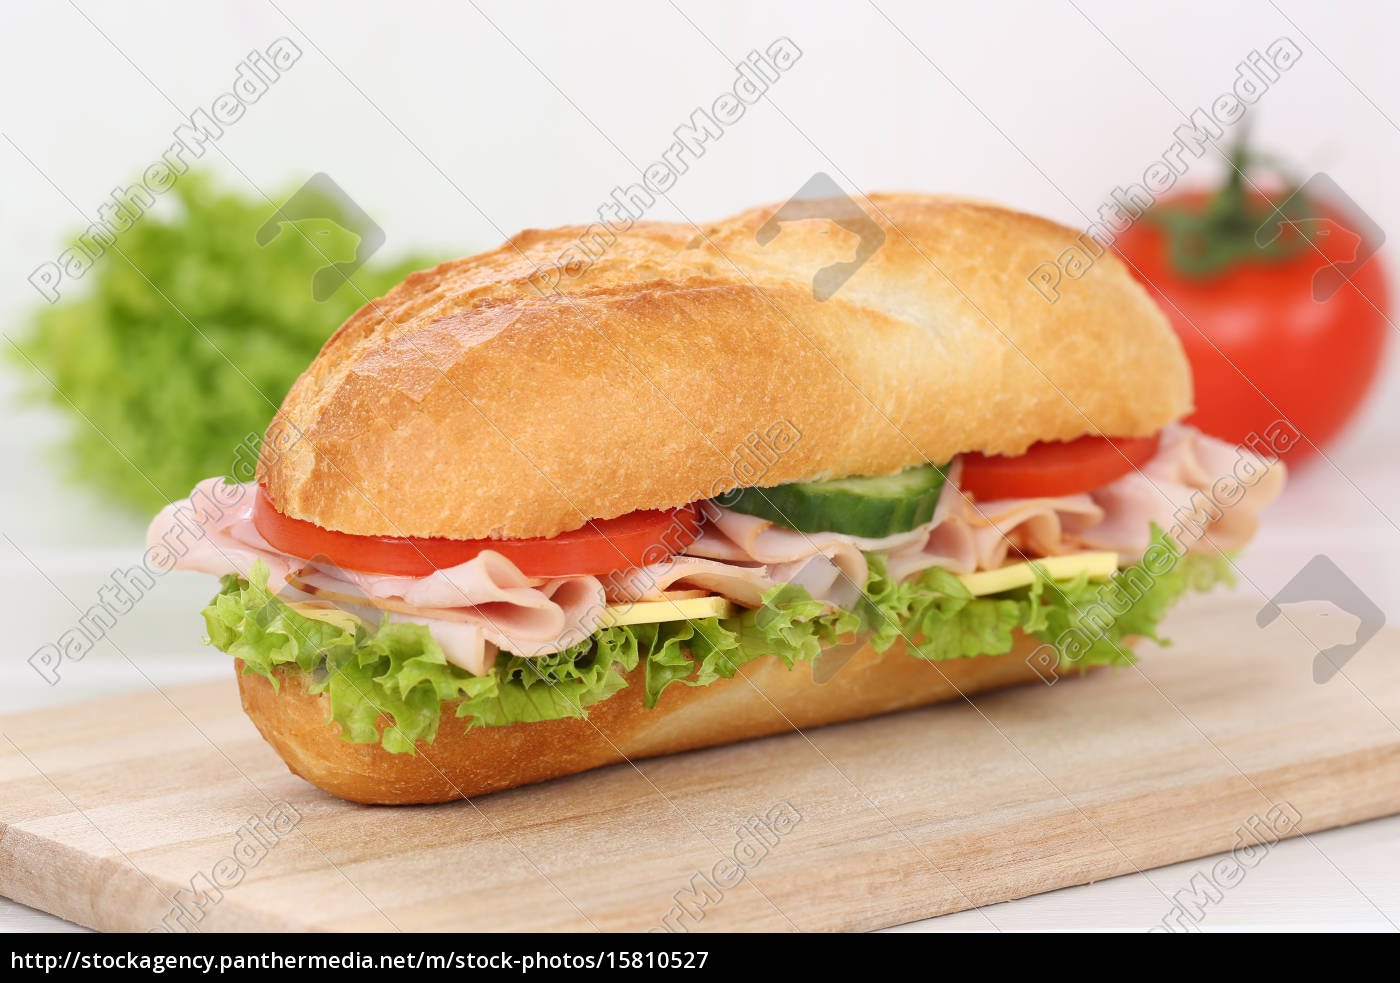 Sandwich Baguette zum Frühstück belegt mit Schinken - Lizenzfreies Bild ...